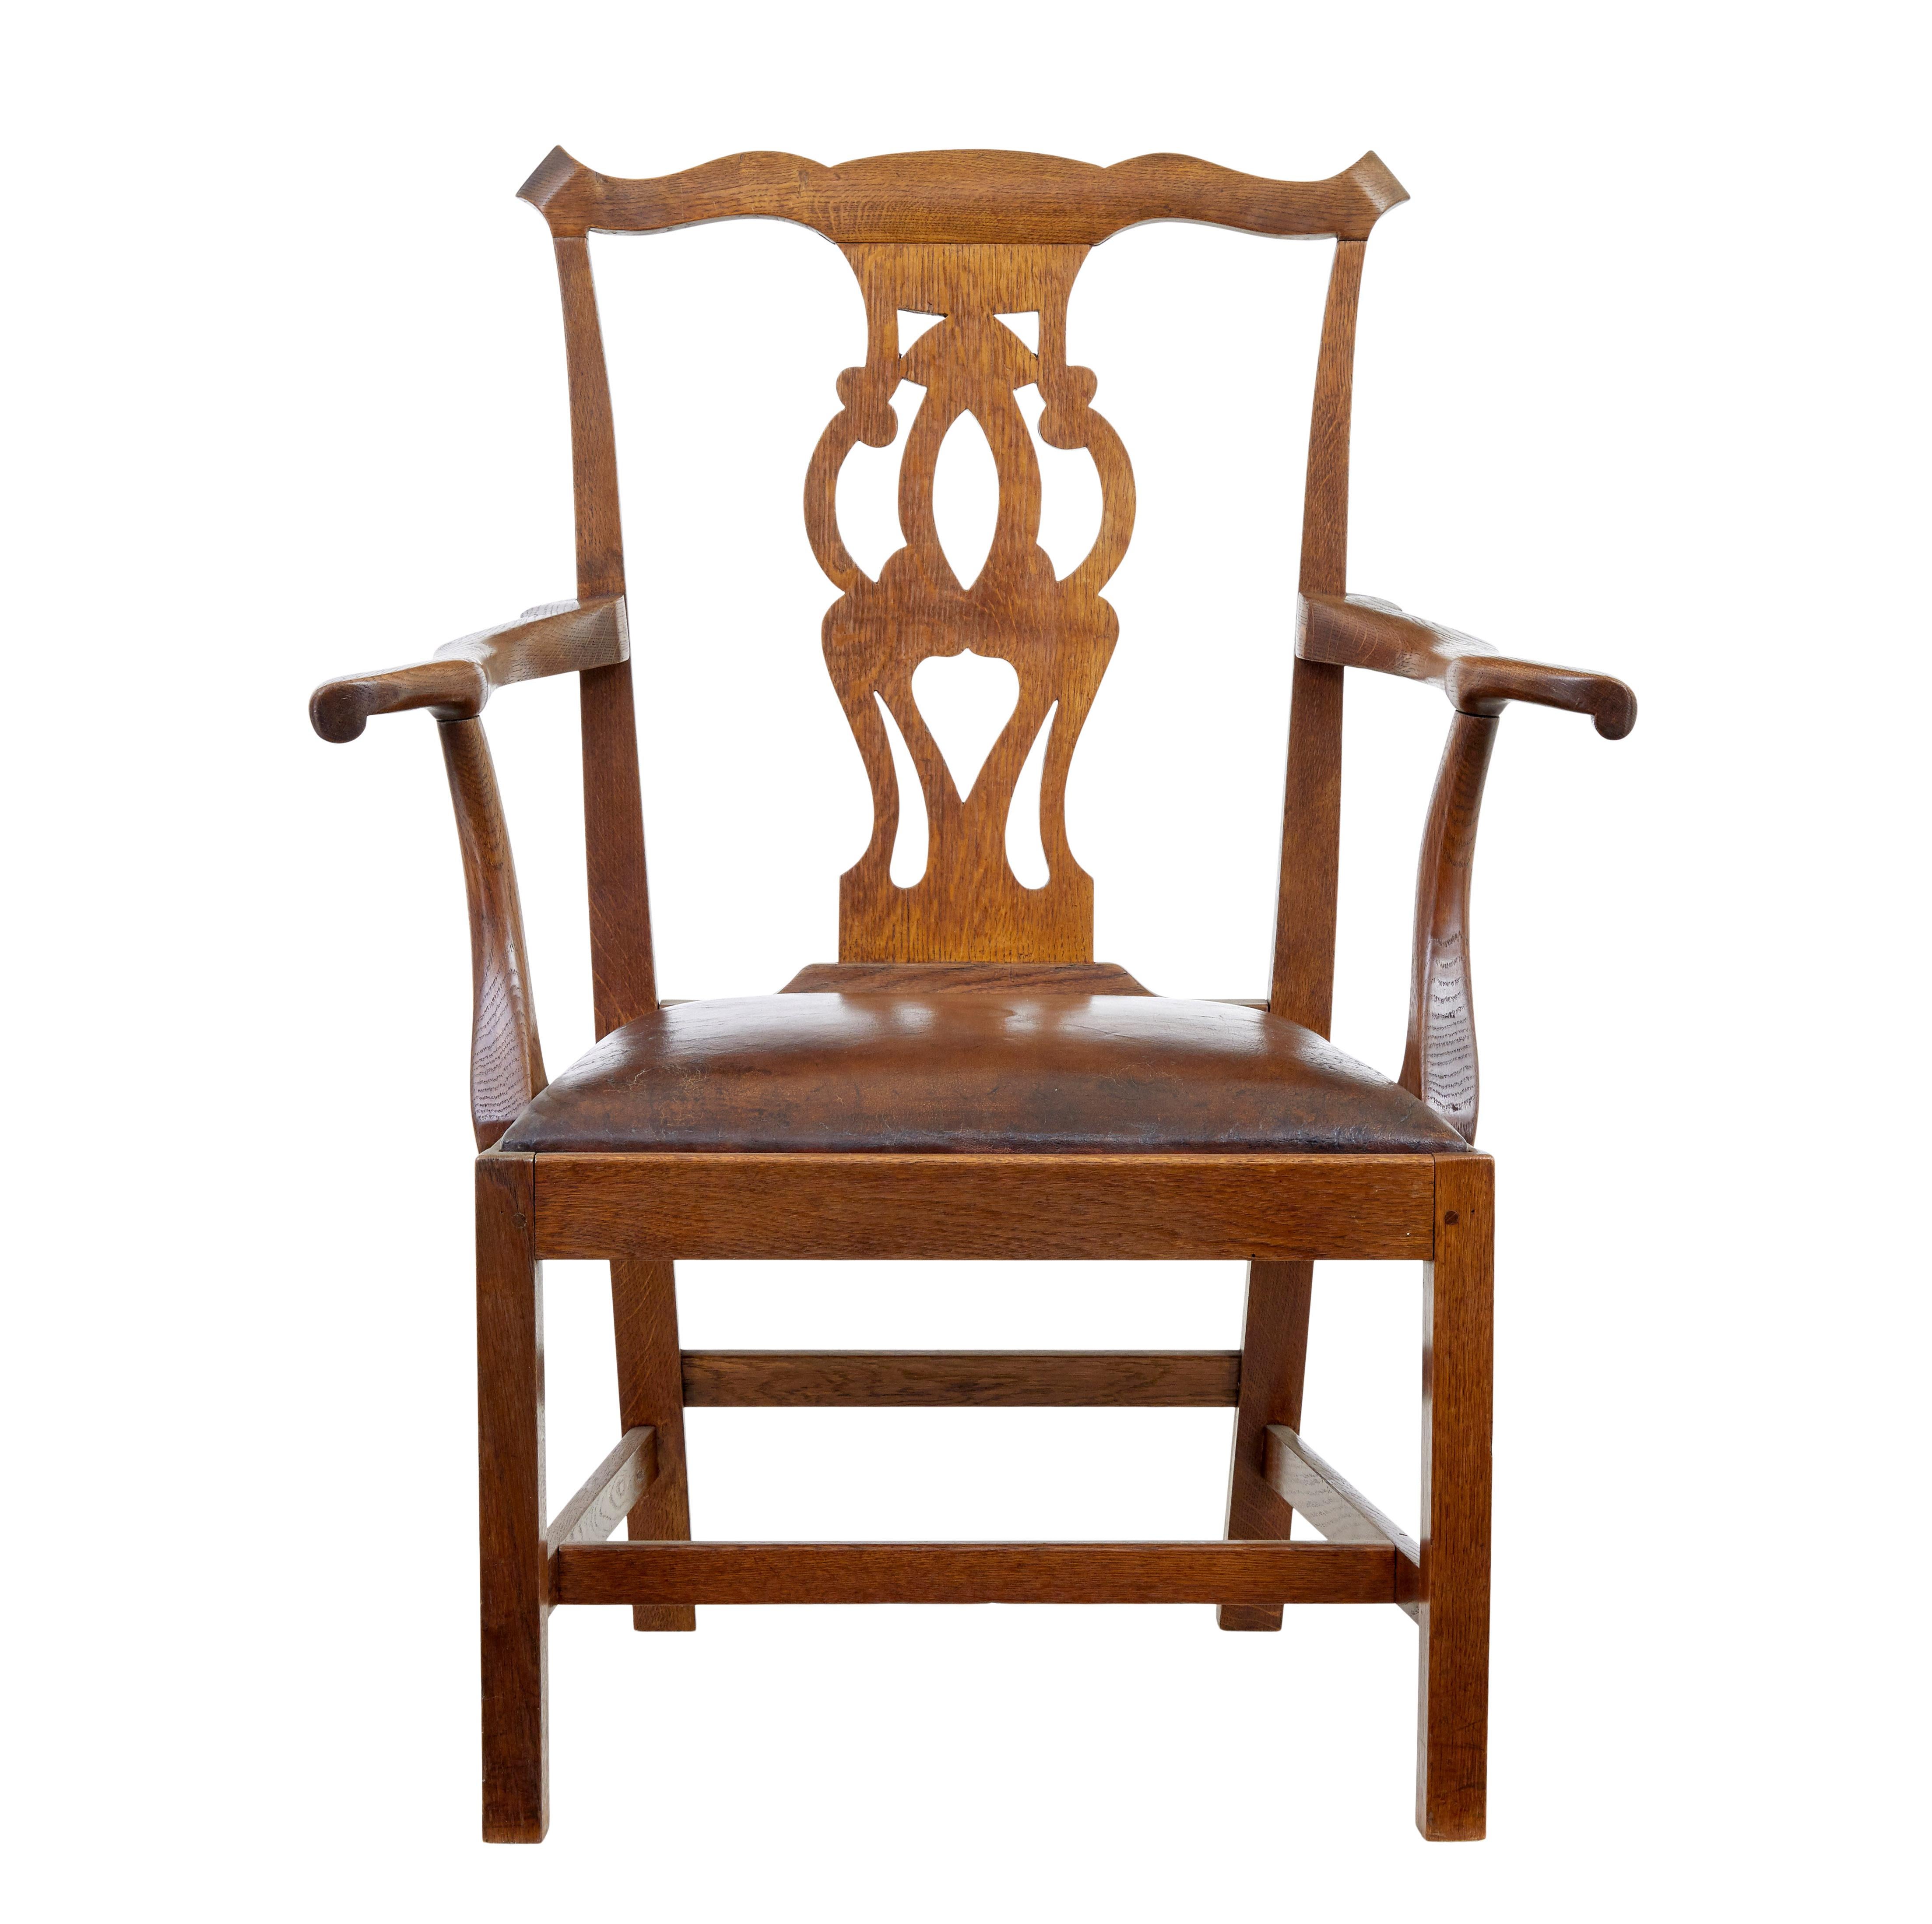 Eichenholzsessel aus der Mitte des 19. Jahrhunderts, um 1840, aus massiver Eiche.

Fantastischer Stuhl mit Proportionen, die sich gut für einen Schreibtischstuhl eignen.

Geformter Rücken mit gearbeiteter Rückenlehne.  Echte tiefe Arme in Form eines